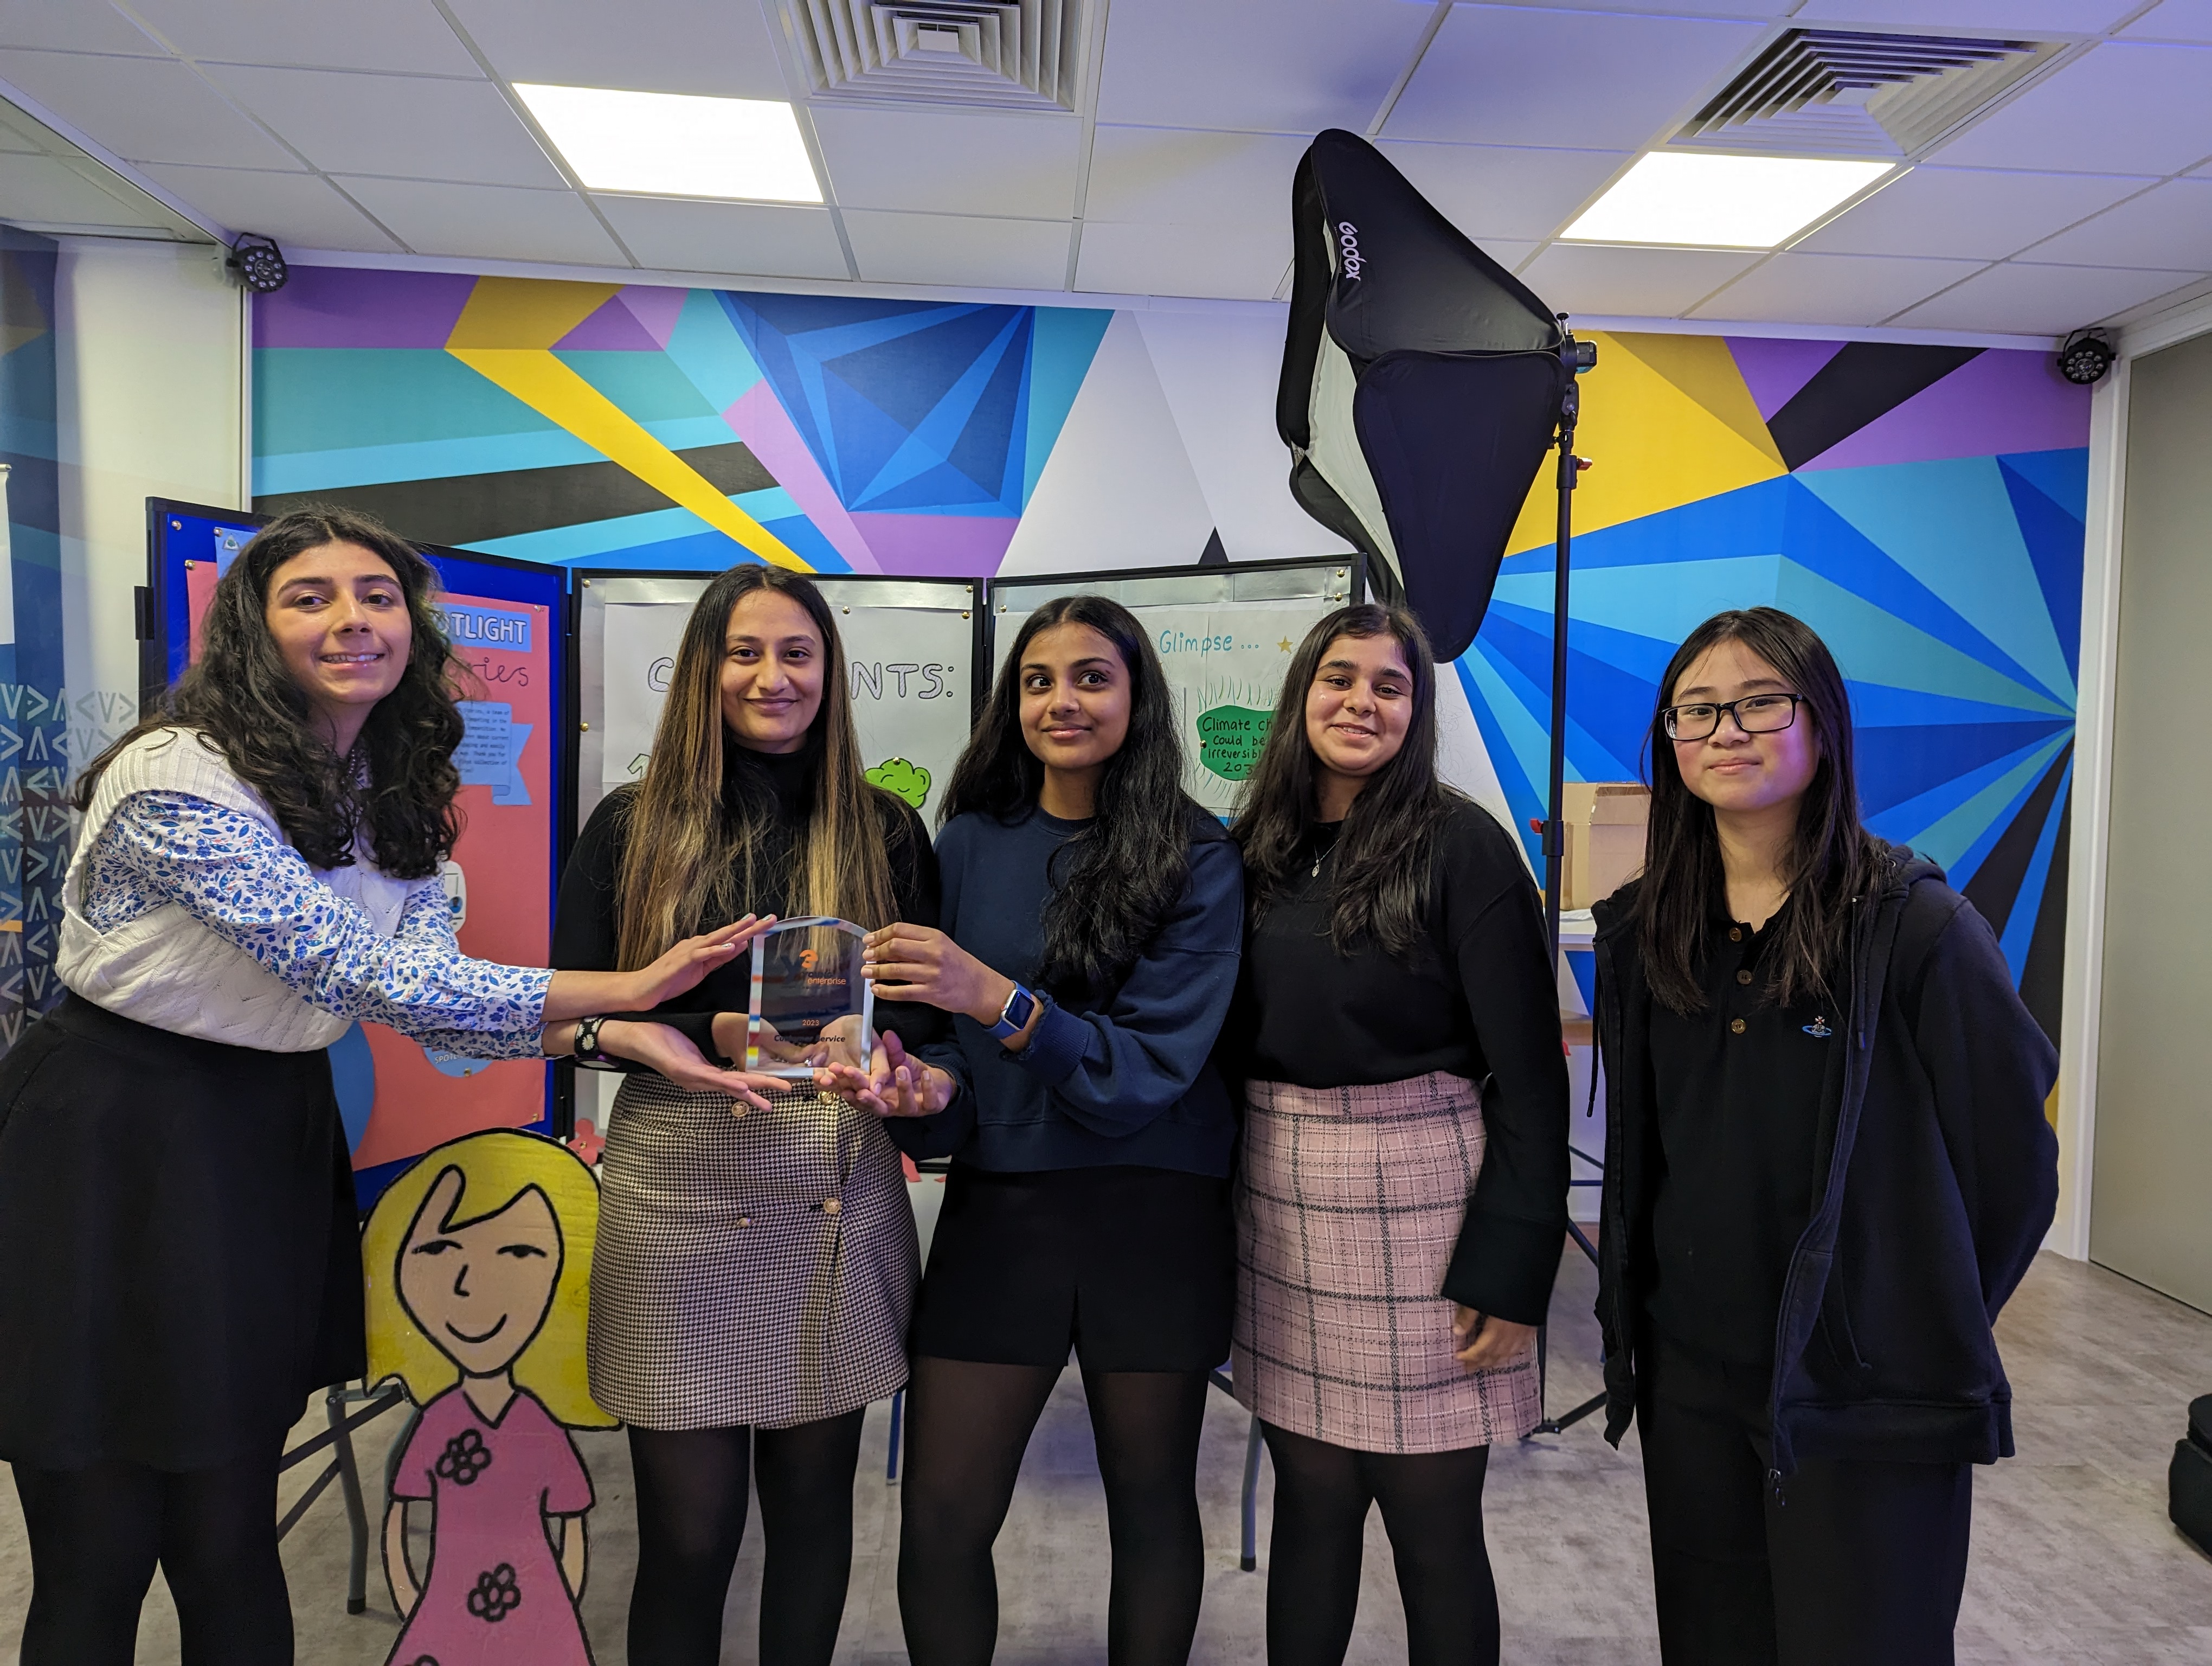 Young Enterprise team show off their award (L-R) - Anyaa, Khushi, Naina, Molly and Claire